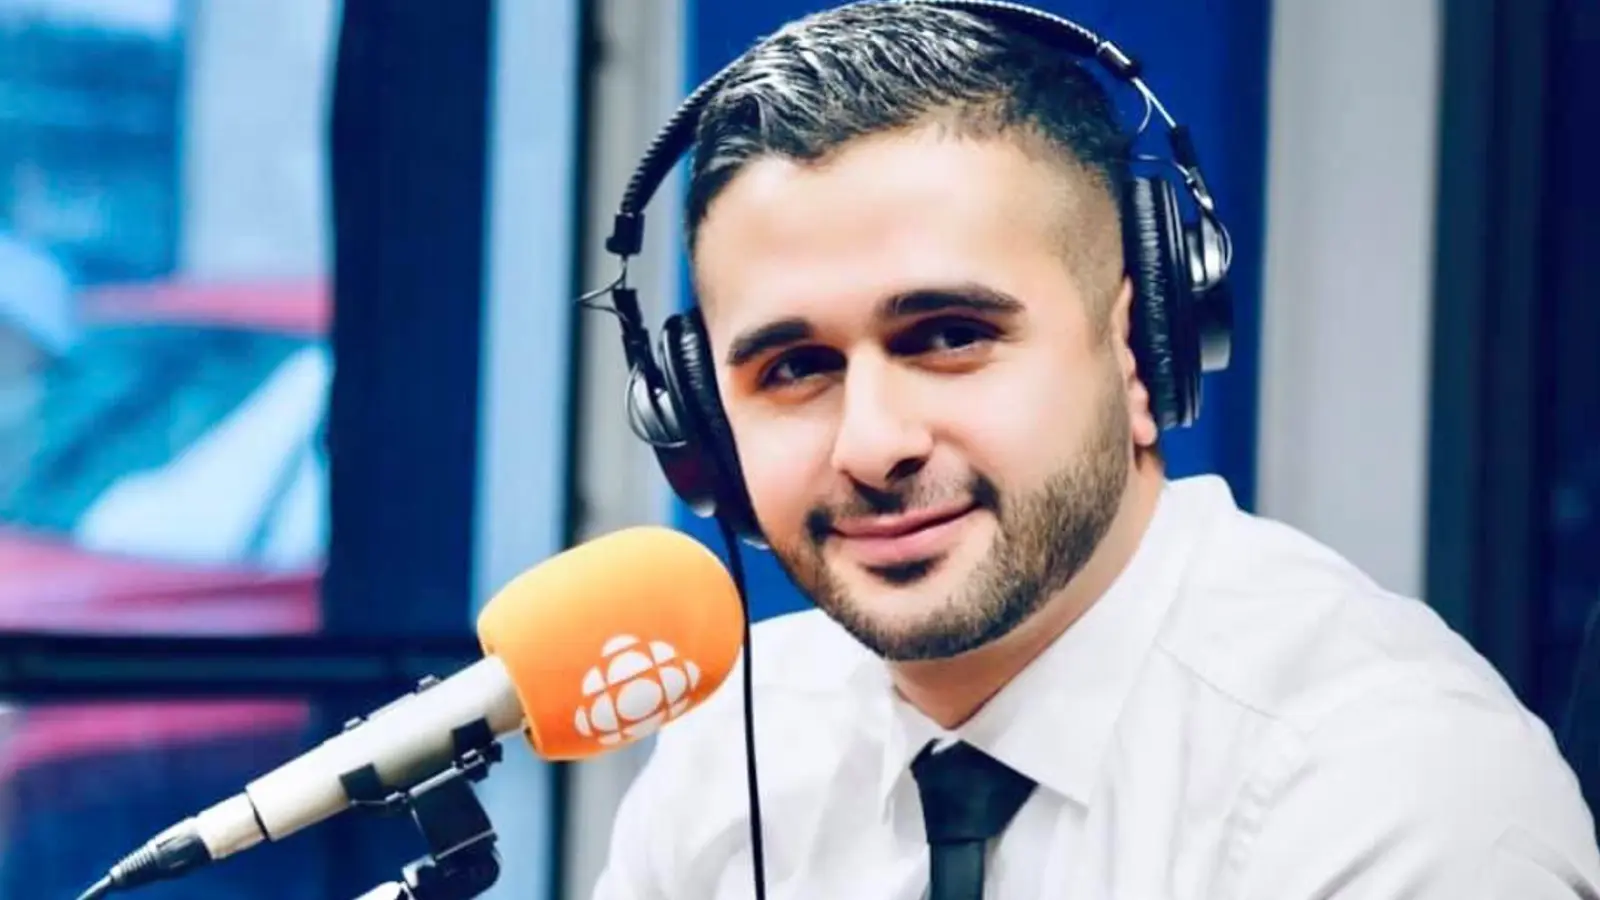 Voici maintenant le nouvel emploi de Hadi Hassin après son départ de Radio-Canada